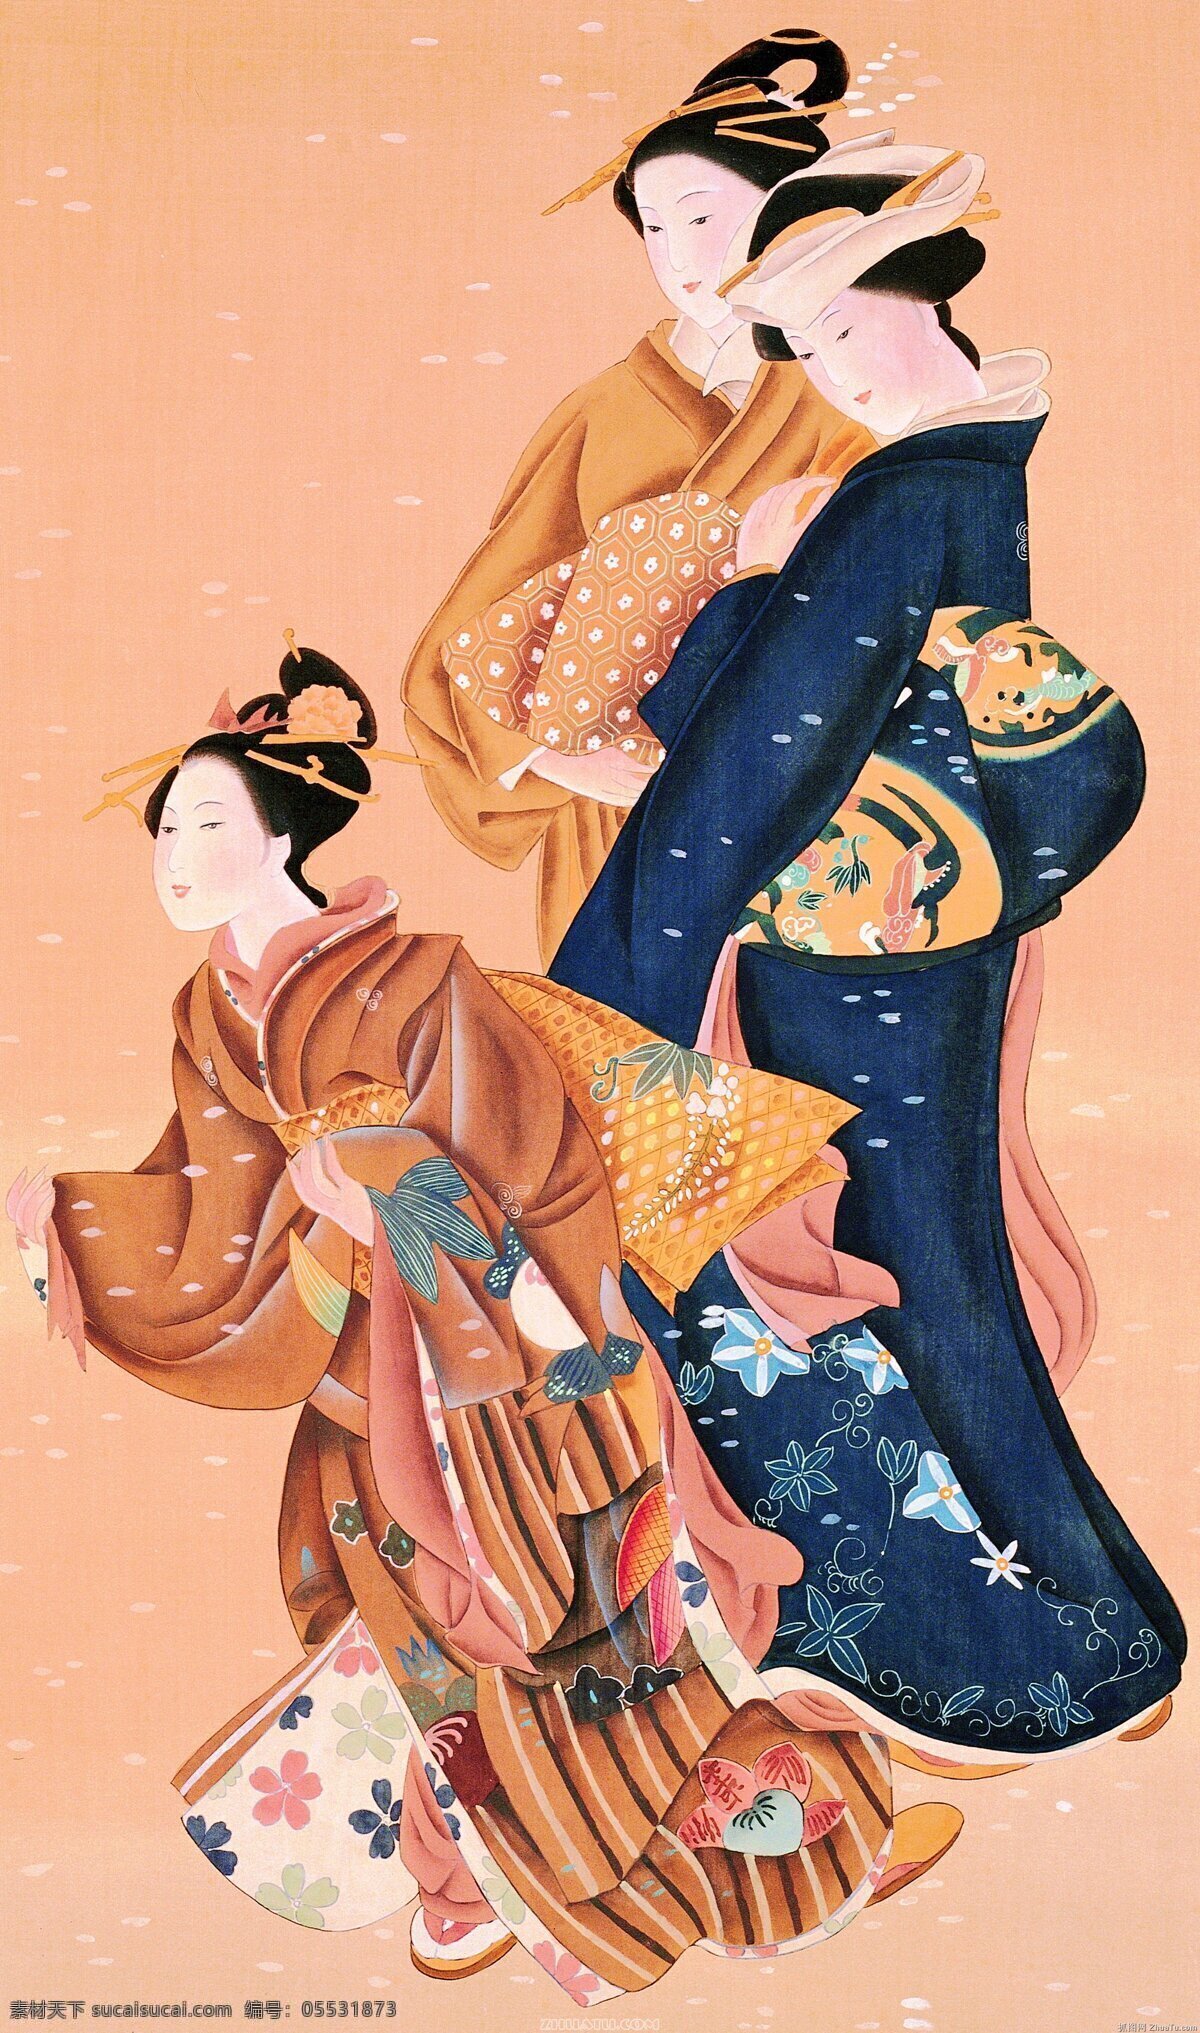 日式美女图 日本 日式风格 浮世绘 和风 江户时代 美女图